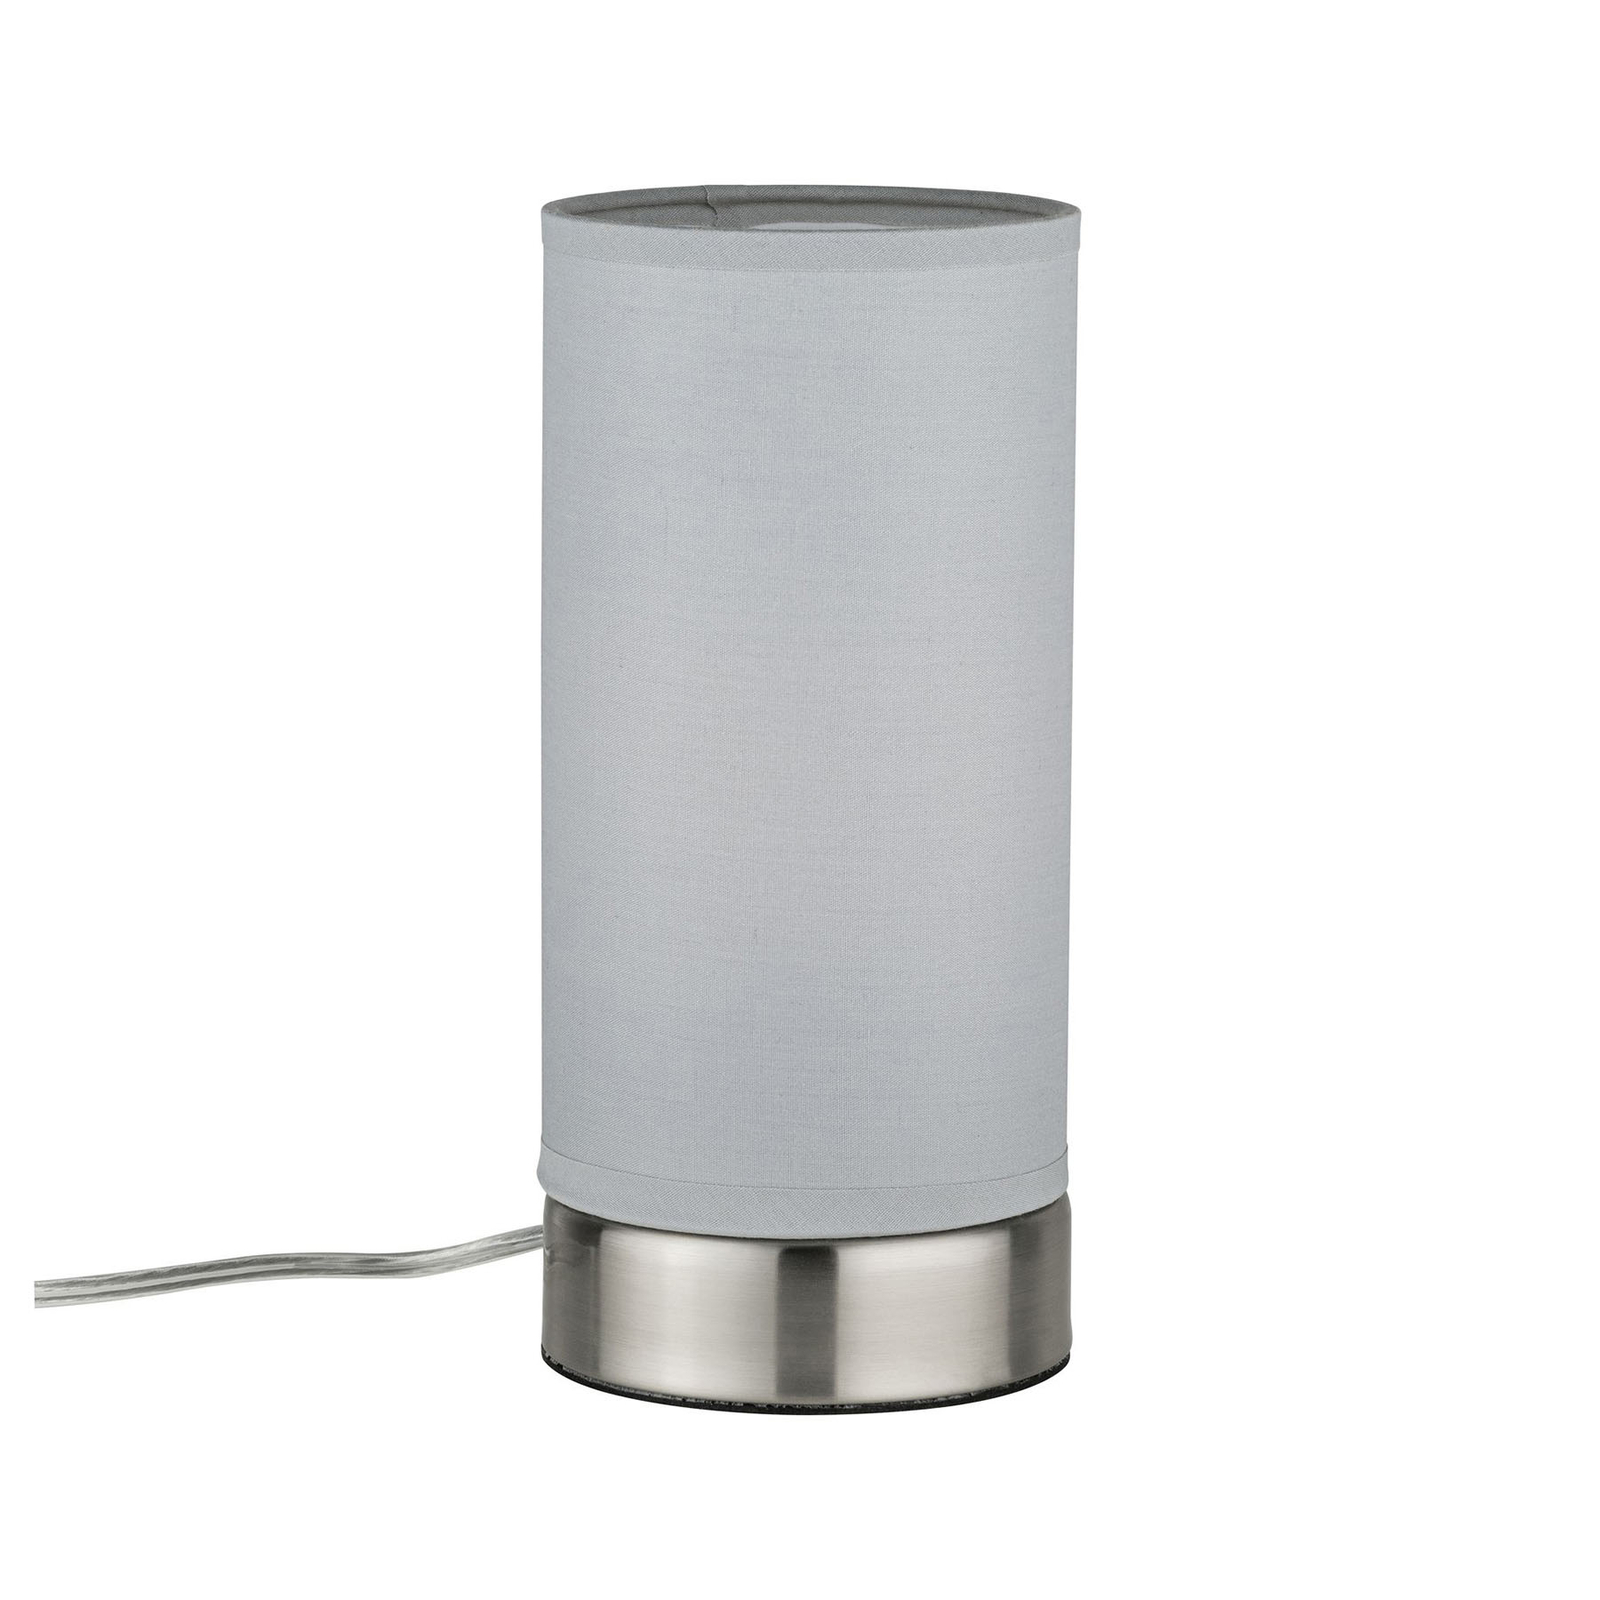 "Paulmann Pia" stalinė lempa iš audinio, šviesiai pilka